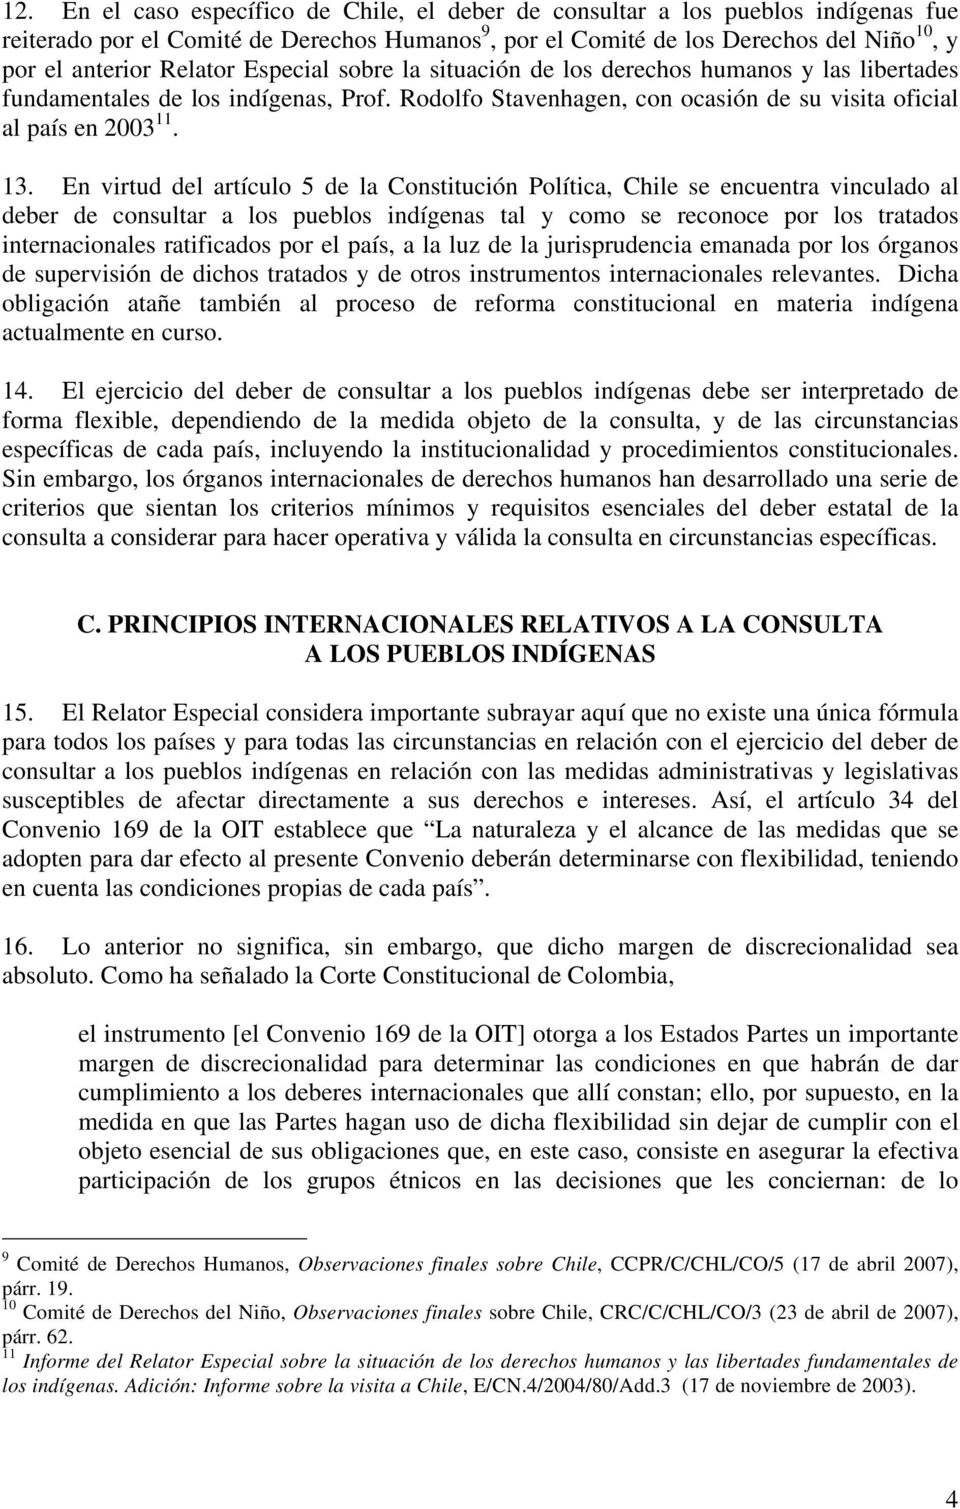 En virtud del artículo 5 de la Constitución Política, Chile se encuentra vinculado al deber de consultar a los pueblos indígenas tal y como se reconoce por los tratados internacionales ratificados